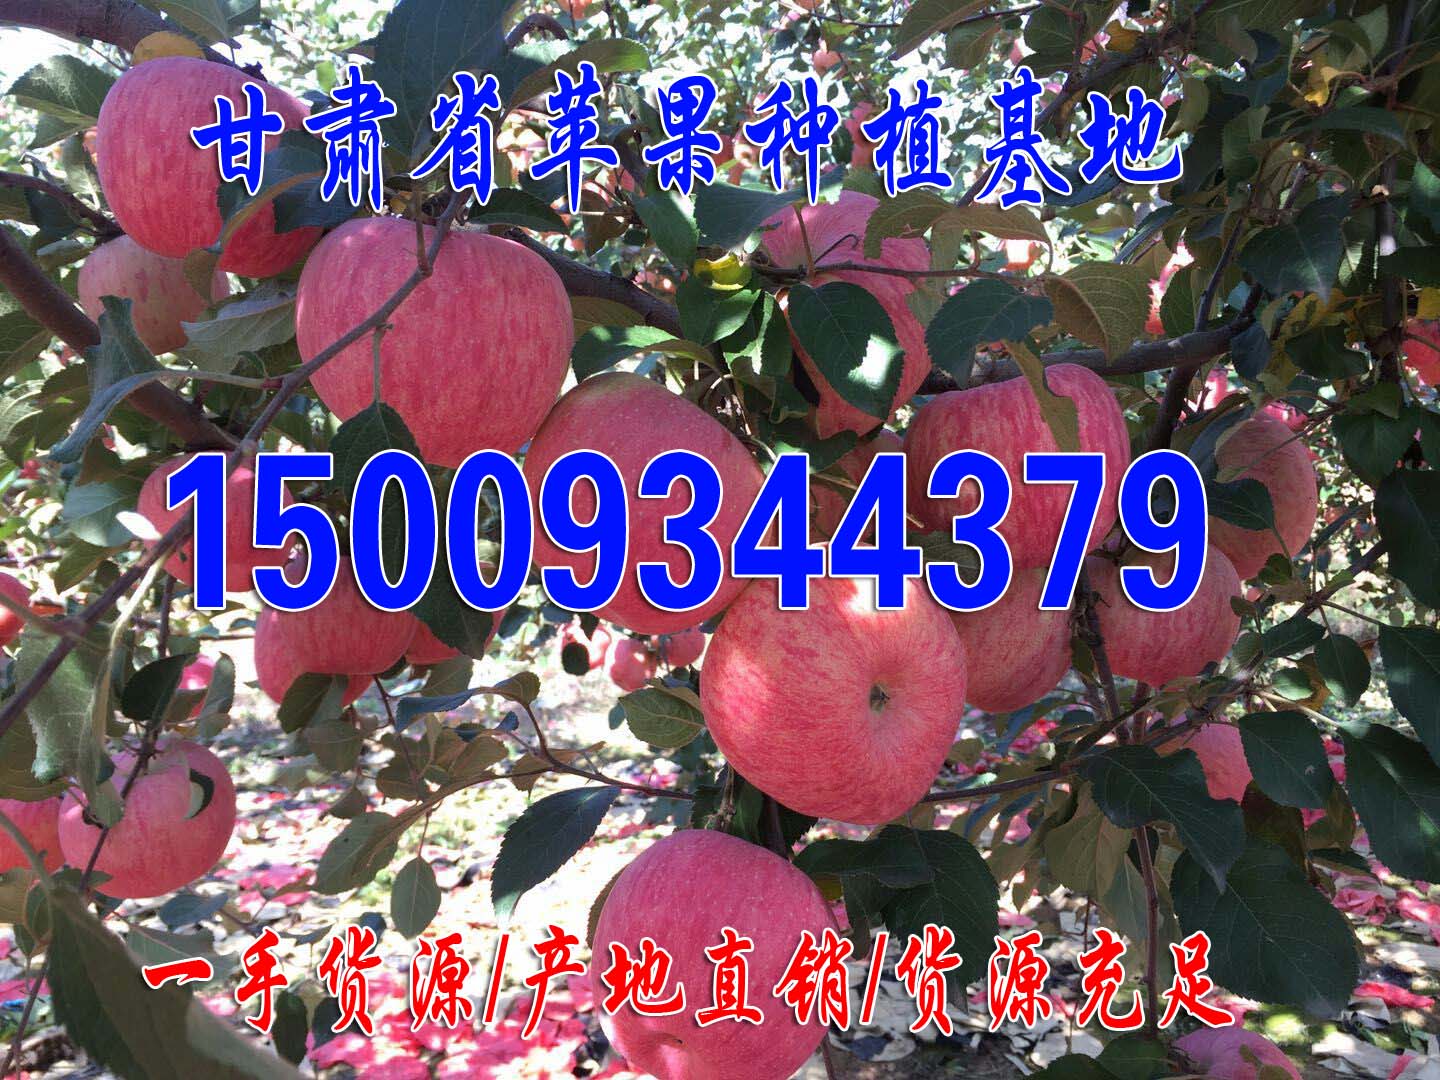 苹果产地直销新鲜水果苹果脆甜多汁欢迎客商前来实地考查商淡价格优惠 庆阳红富士1